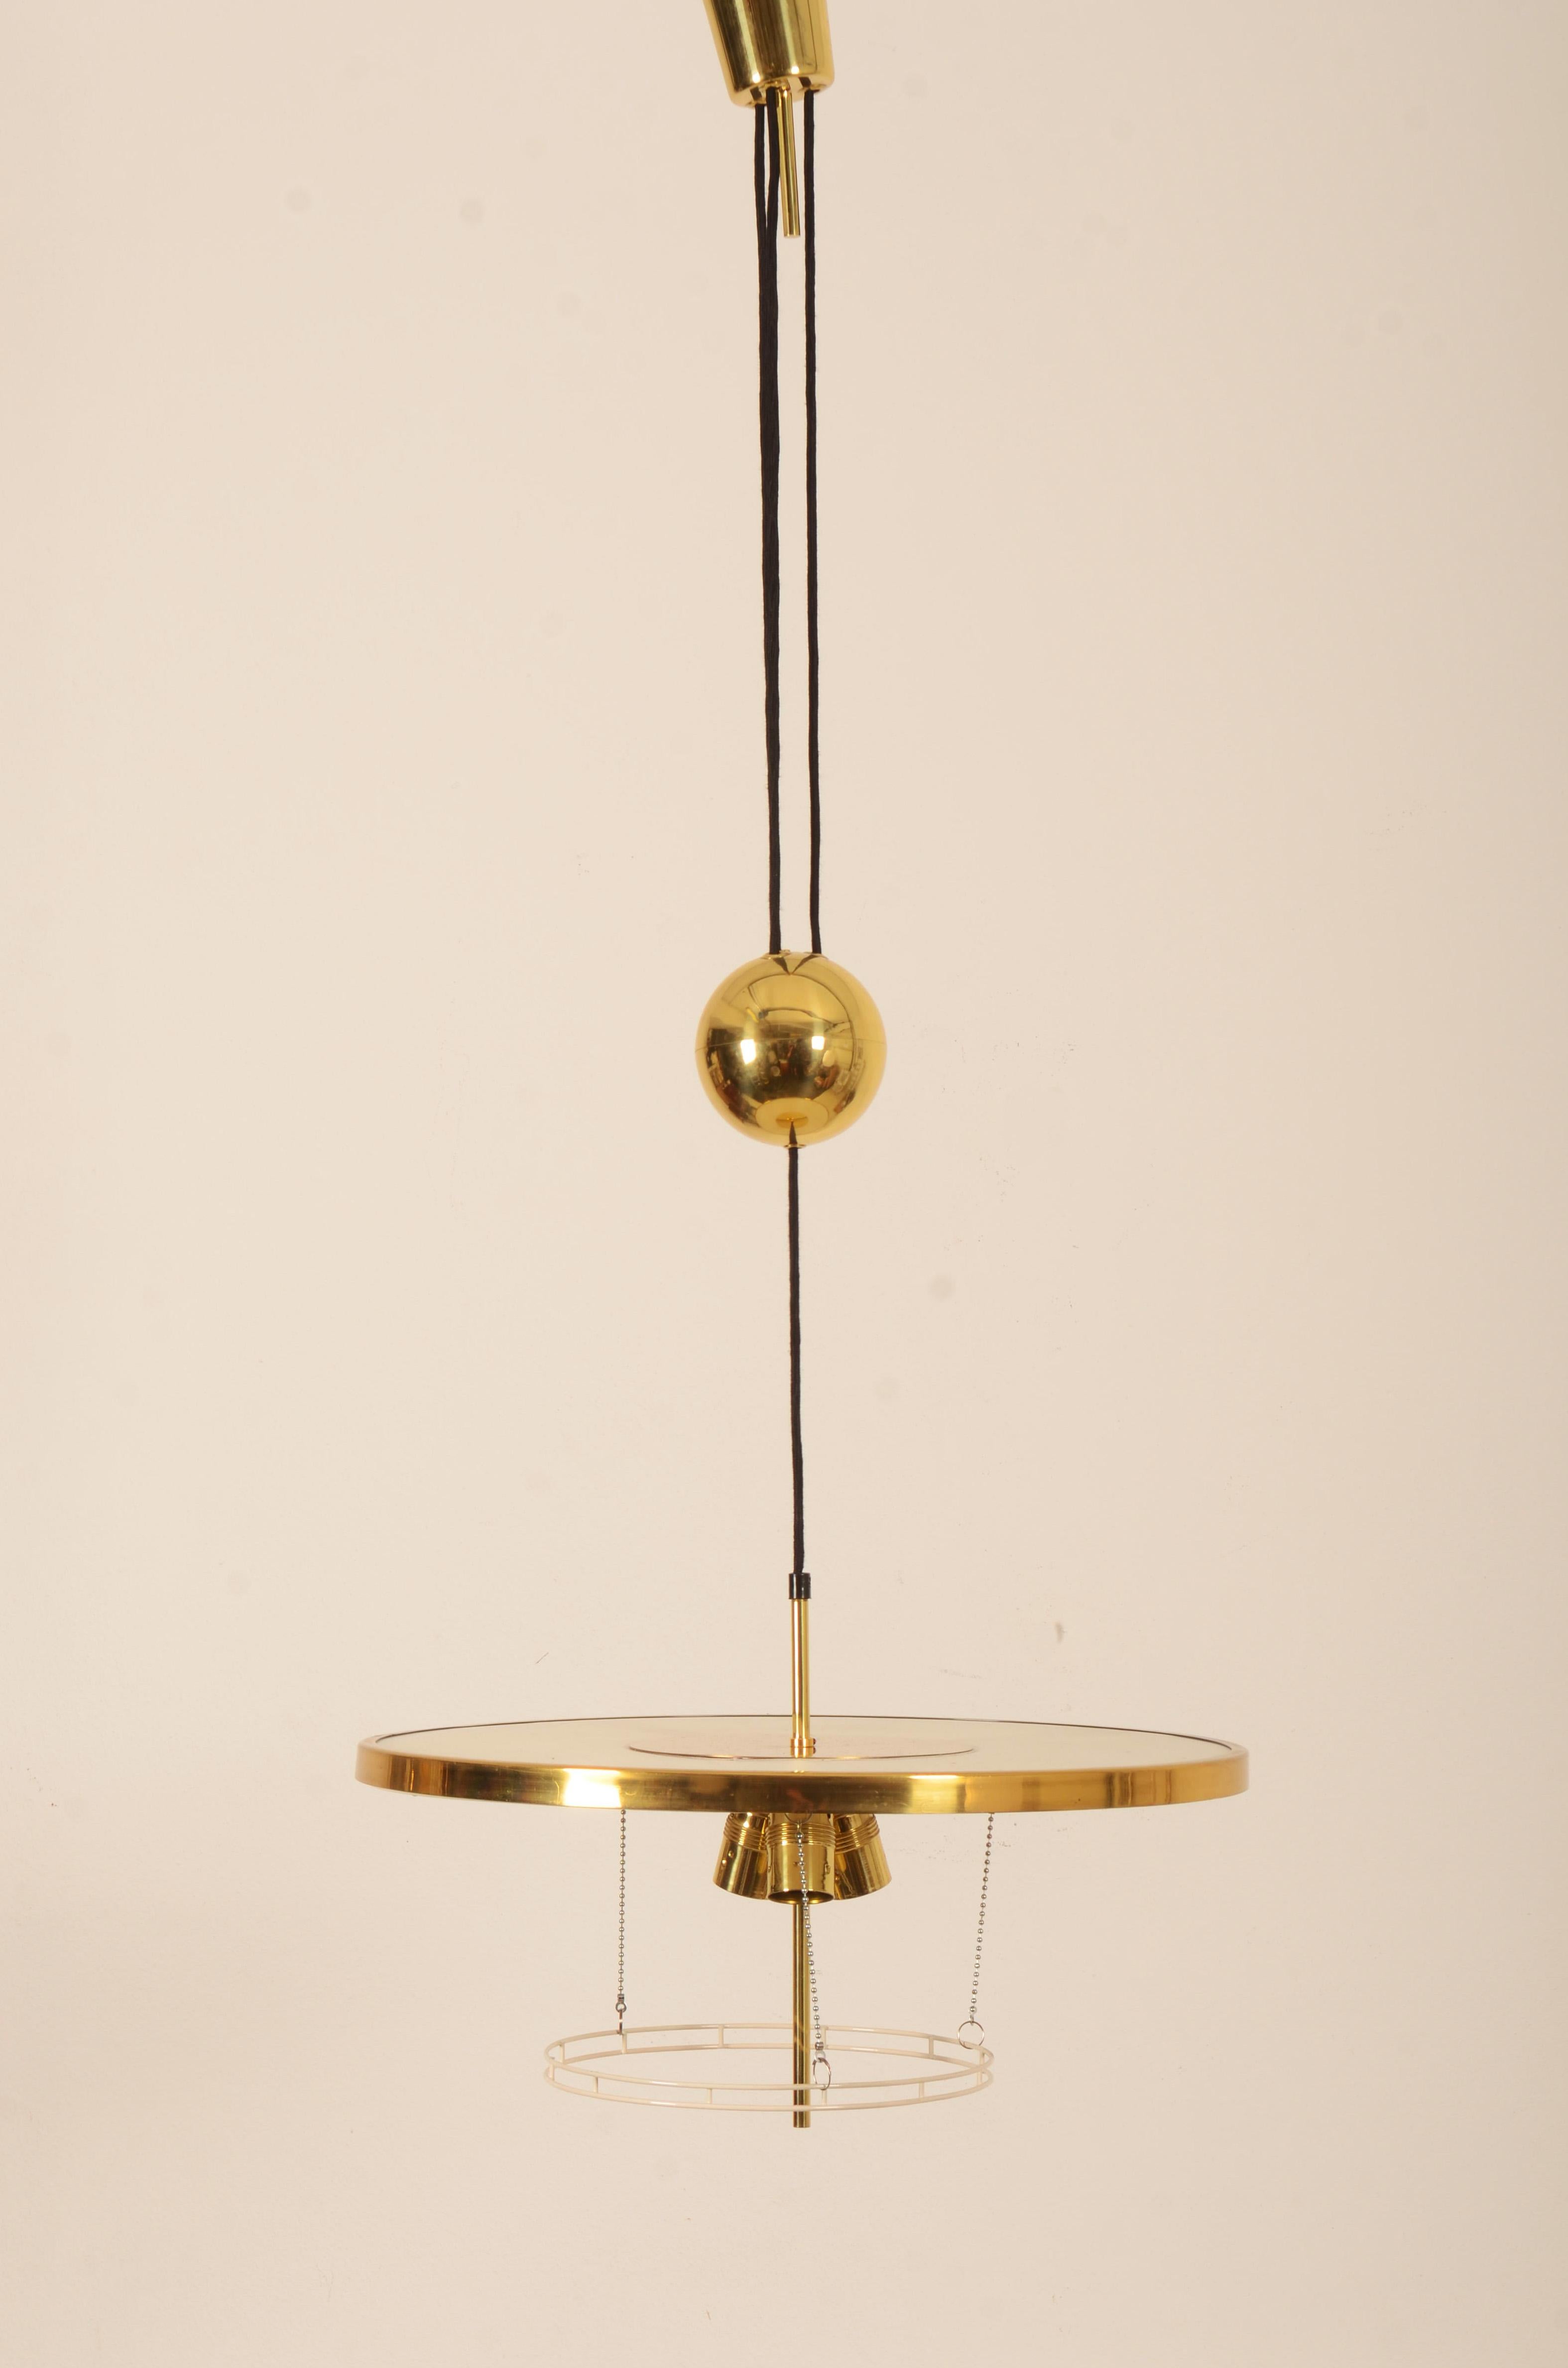 Lampe suspendue à contrepoids en laiton, réglable en hauteur, par J.T. Kalmar fabriqué au milieu du siècle dernier dans les années 1950 et conçu par Adolf Loos. Équipé de trois prises E27. La lampe est entièrement restaurée avec un nouveau système